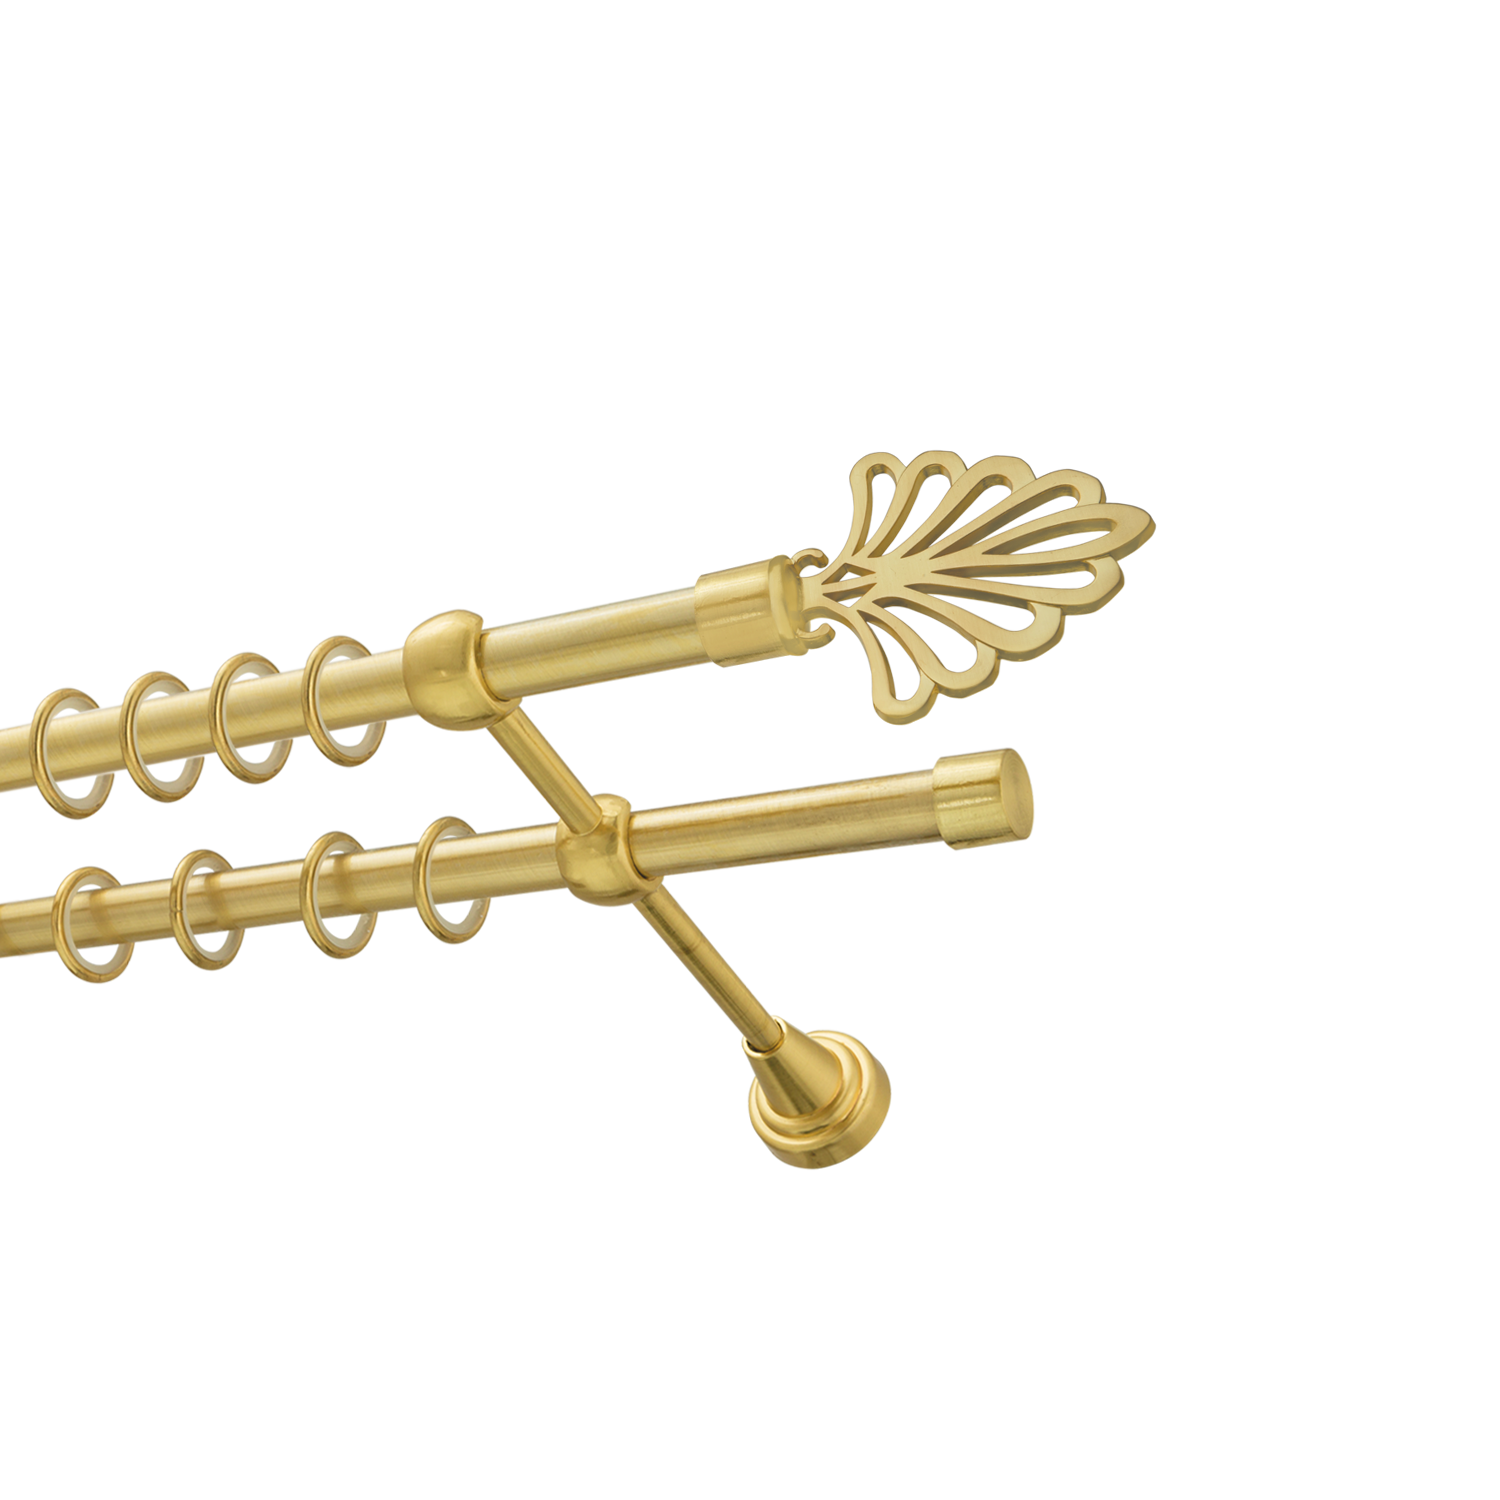 Металлический карниз для штор Бутик, двухрядный 16/16 мм, золото, гладкая штанга, длина 180 см - фото Wikidecor.ru